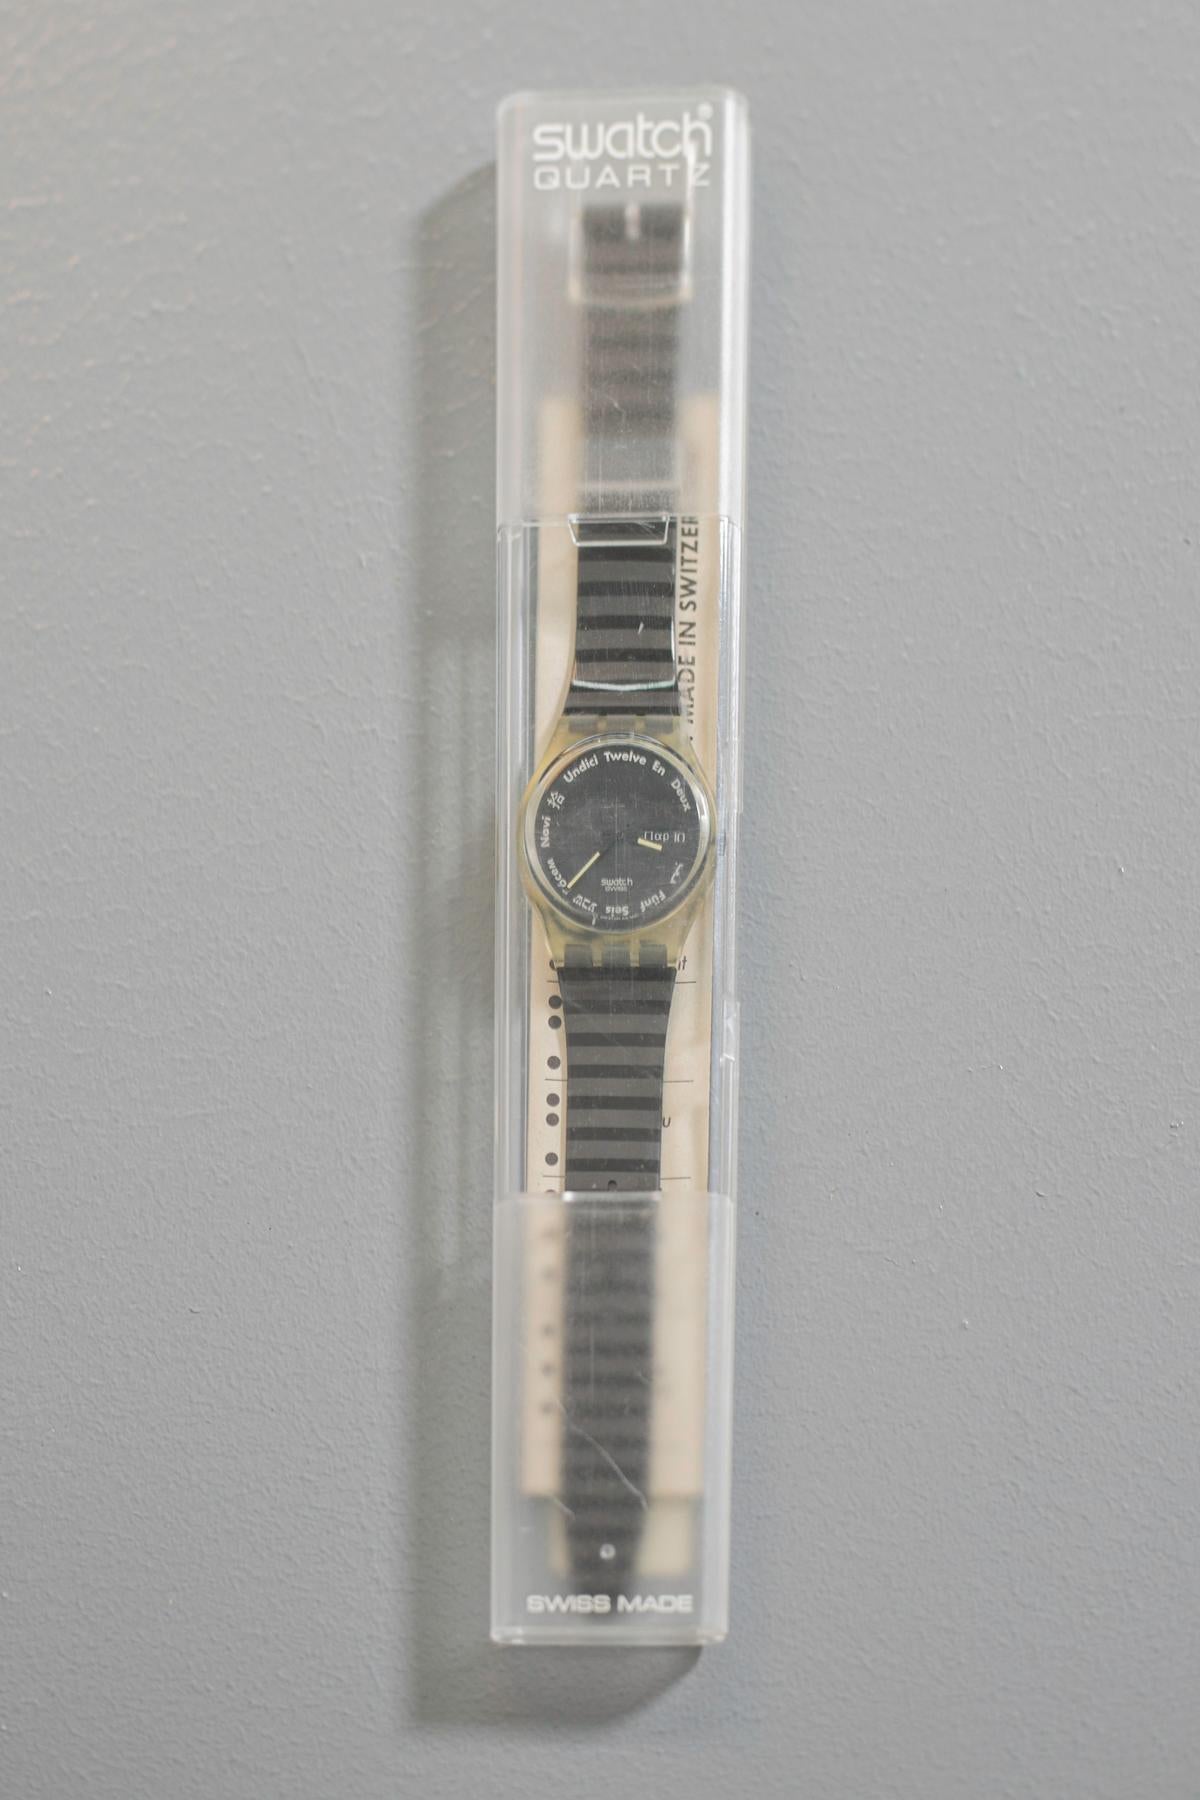 Klassische Swatch-Uhr aus der Kollektion 1992. Dies ist eine sehr klassische und elegante Uhr, die Farben des Armbandes erlauben es, dieses Stück sowohl mit einem eleganten Tages- als auch mit einem Abendoutfit zu kombinieren. Auf der Innenseite des